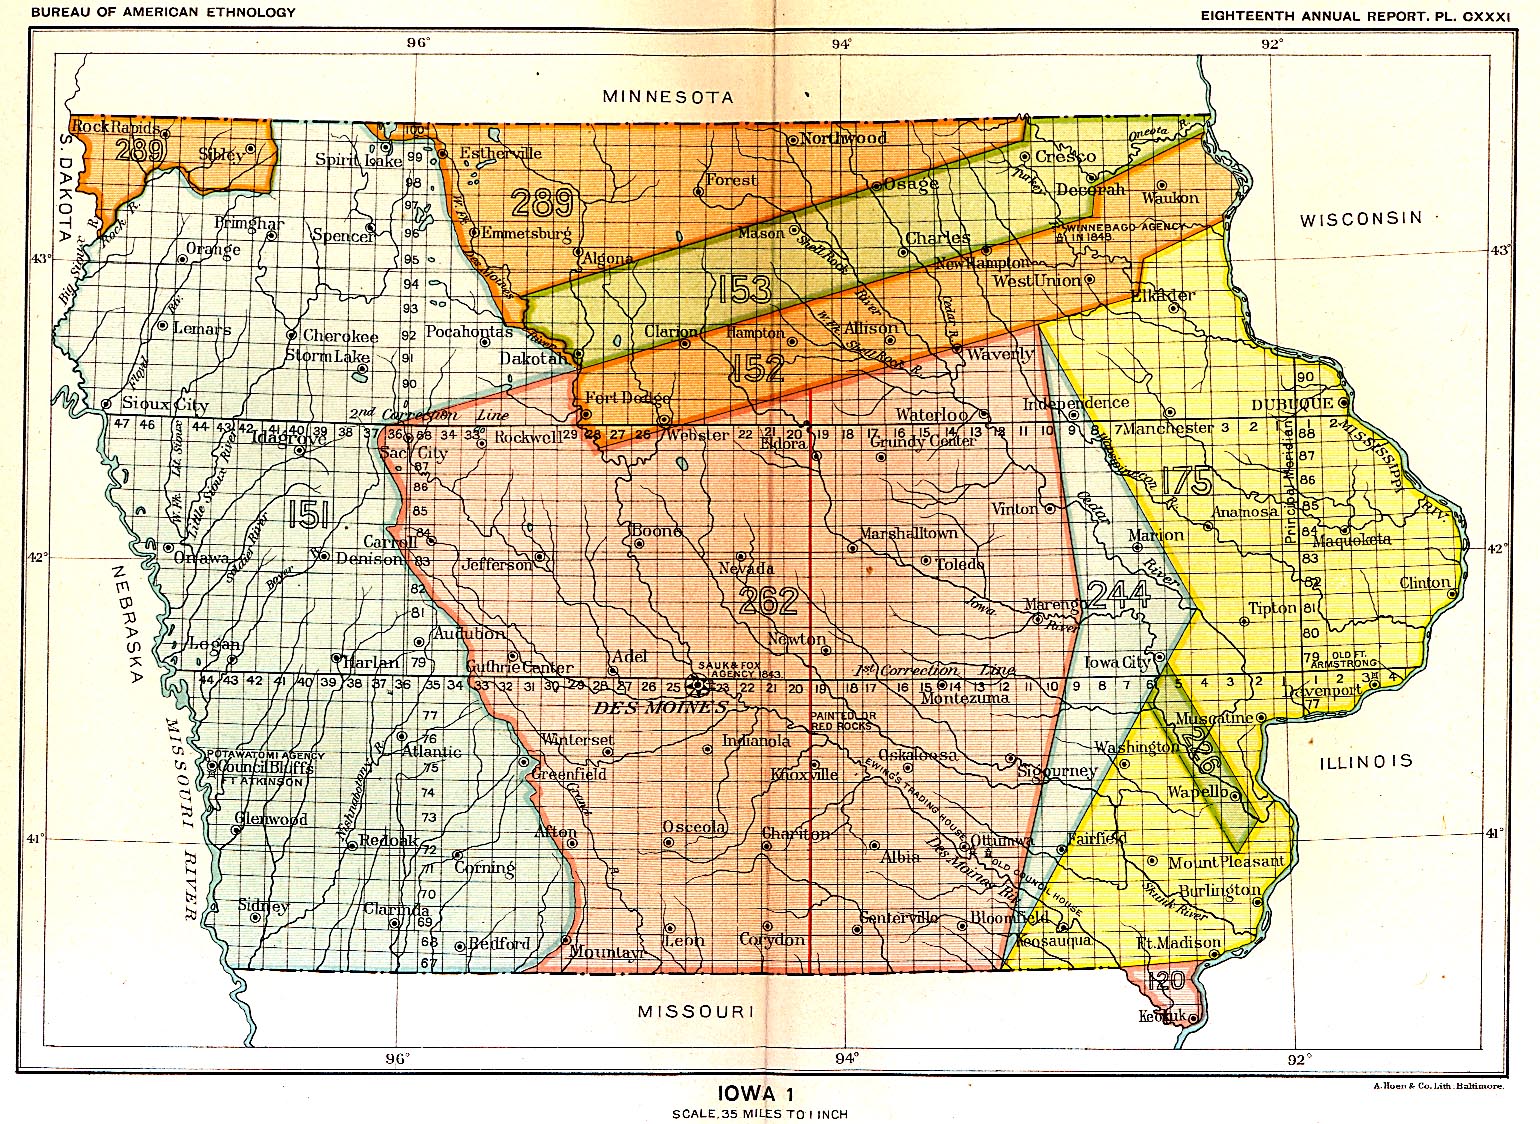 Iowa 1, Map 24